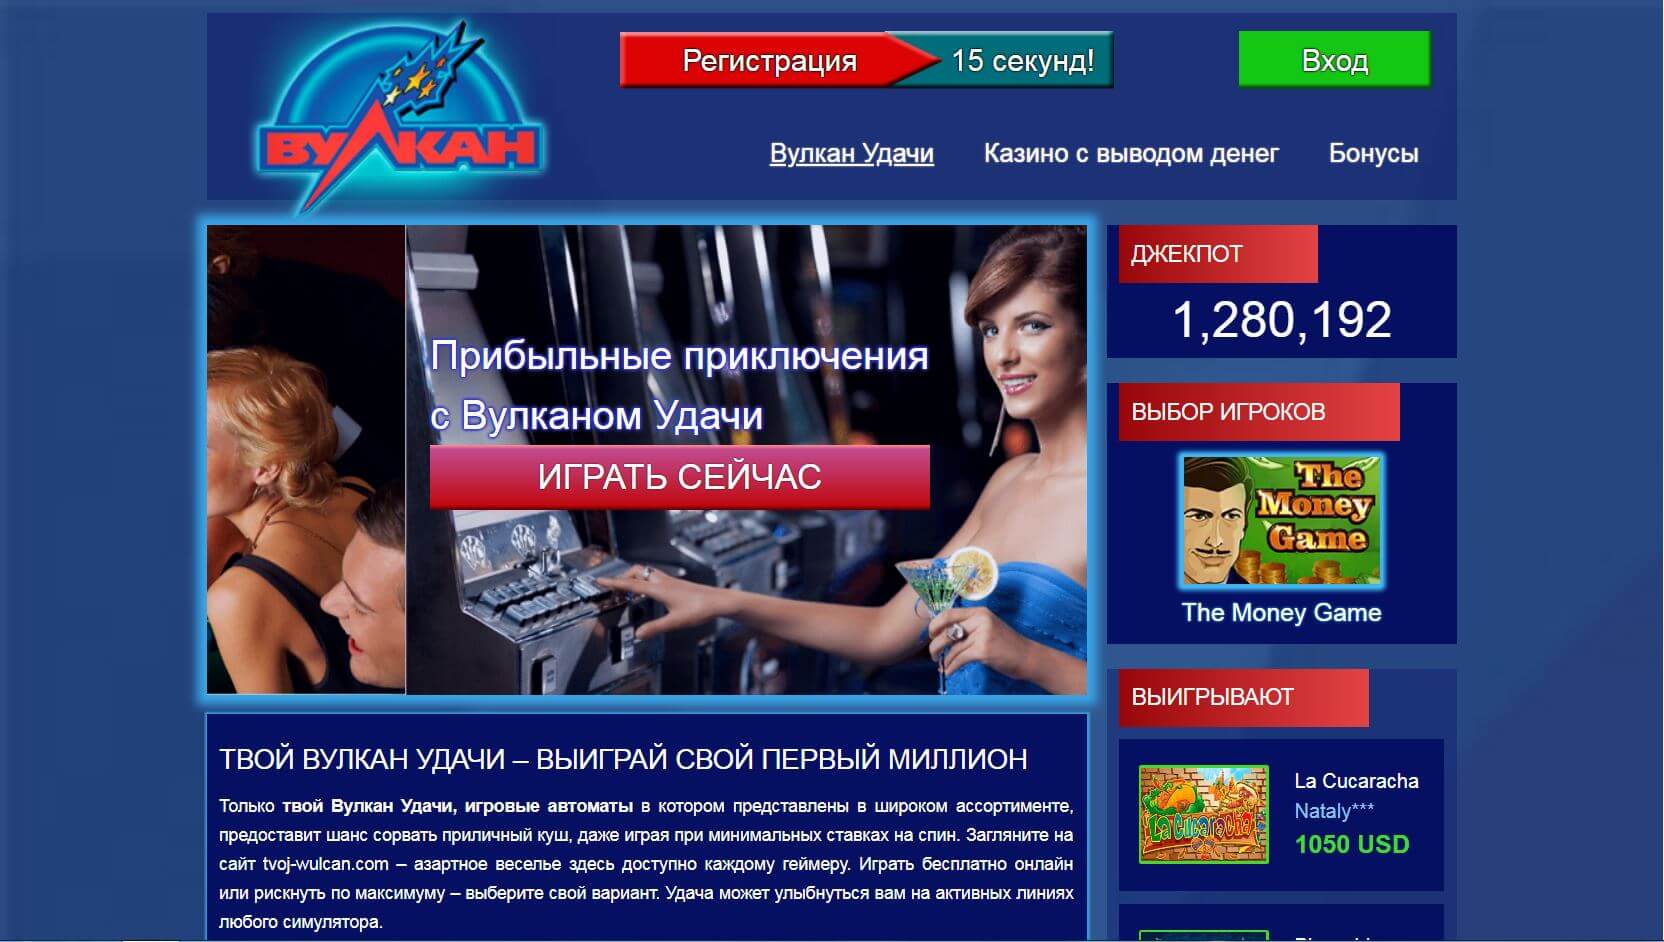 Обзор онлайн-казино Вулкан Удачи tvoj-wulcan.com